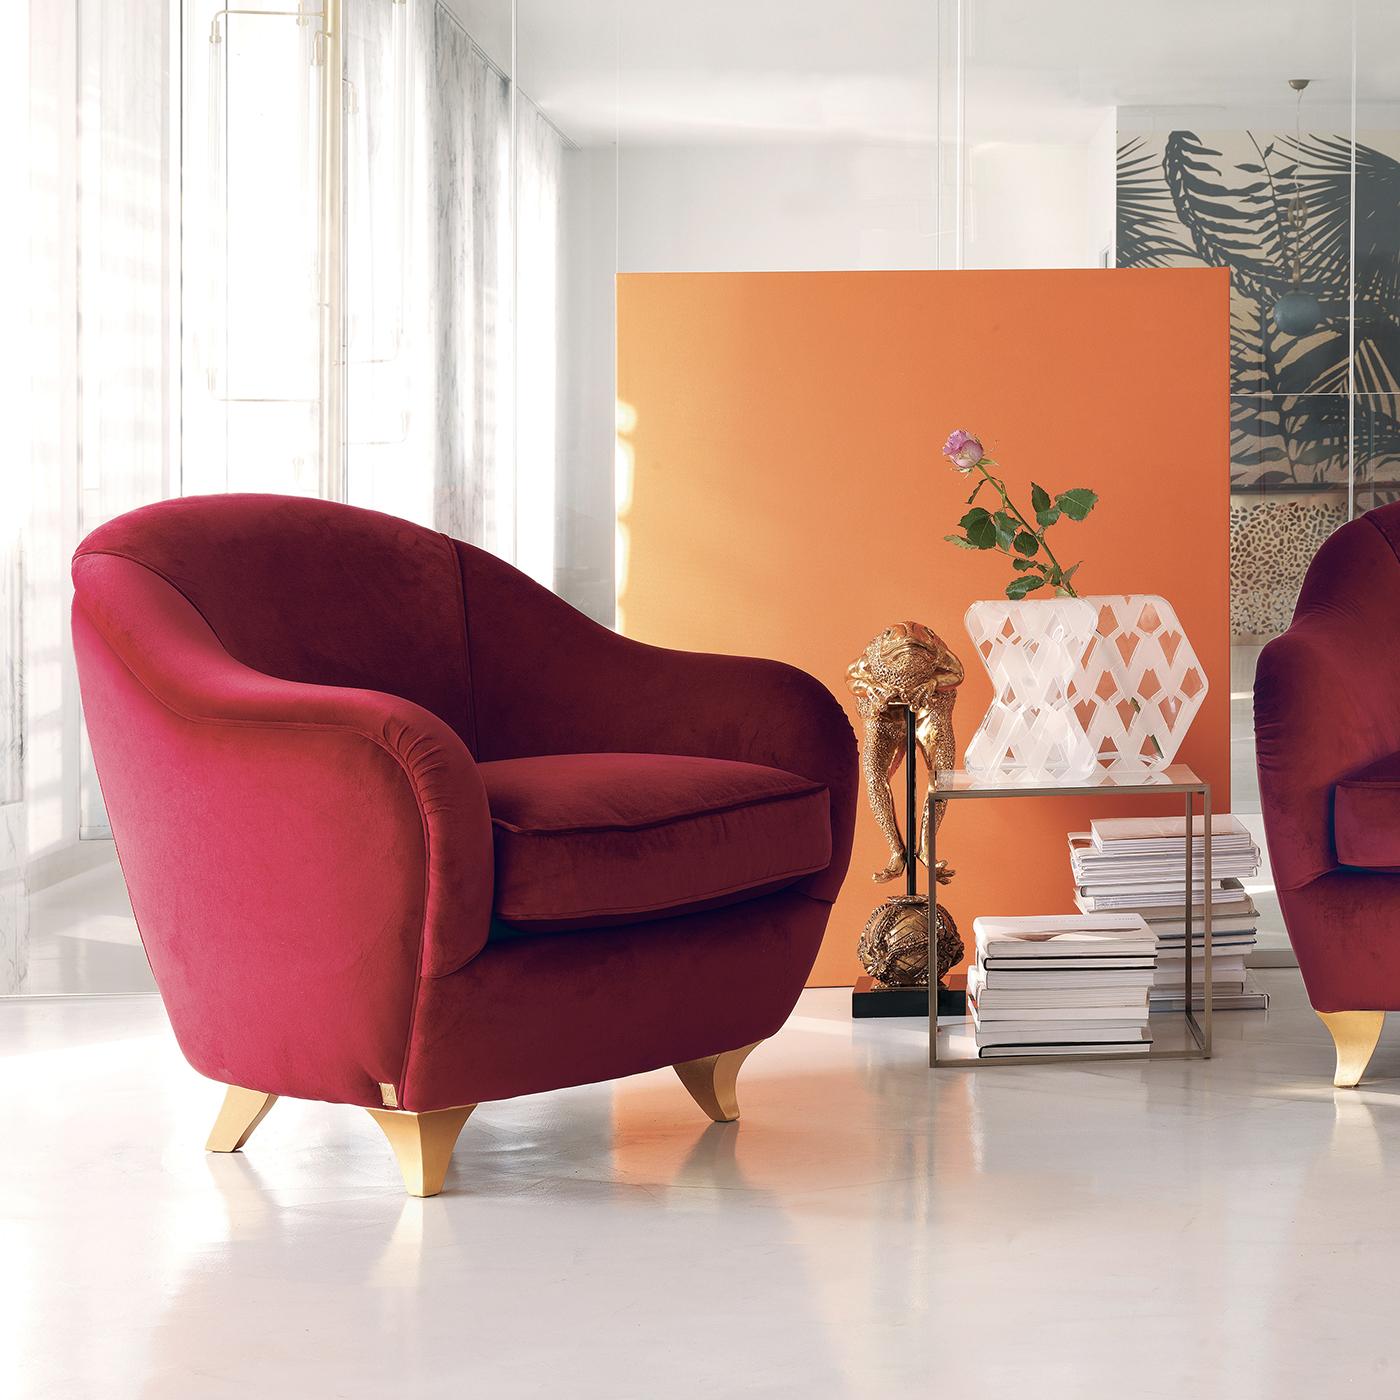 Un exercice de confort et de design moderne, ce fauteuil est intemporel et élégant et apportera un accent luxueux dans n'importe quelle maison. Que ce soit dans une entrée, associé à un jumeau dans le salon, ou comme fauteuil d'appoint dans une